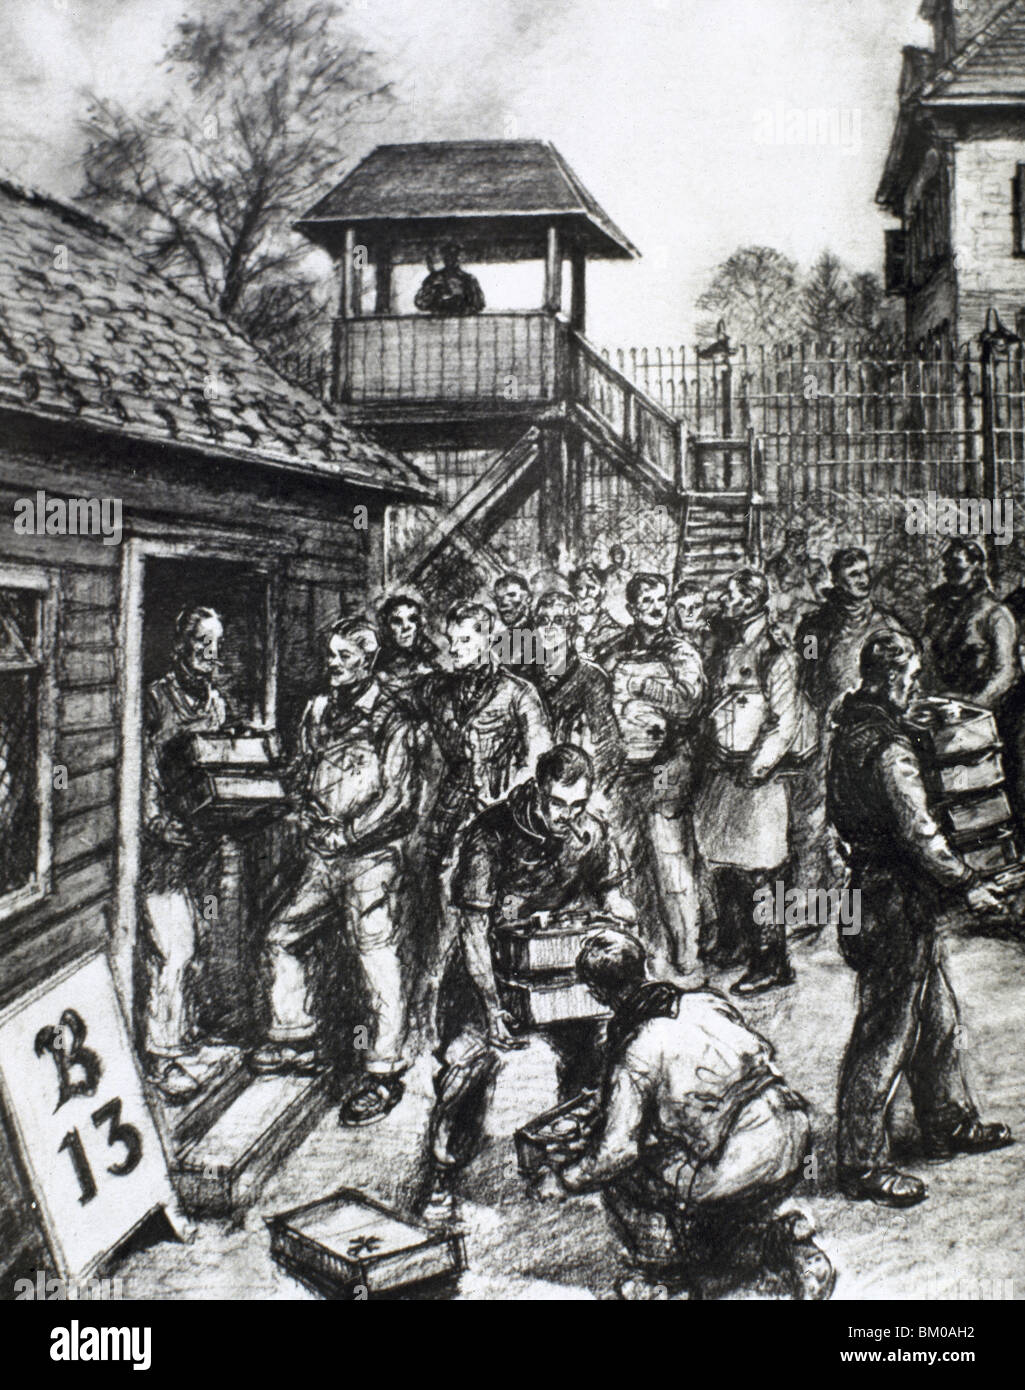 La II guerra mondiale (1939-1945). Soldati britannici imprigionato in un campo tedesco la ricezione di pacchetti della Croce Rossa, 1943. Disegno. Foto Stock